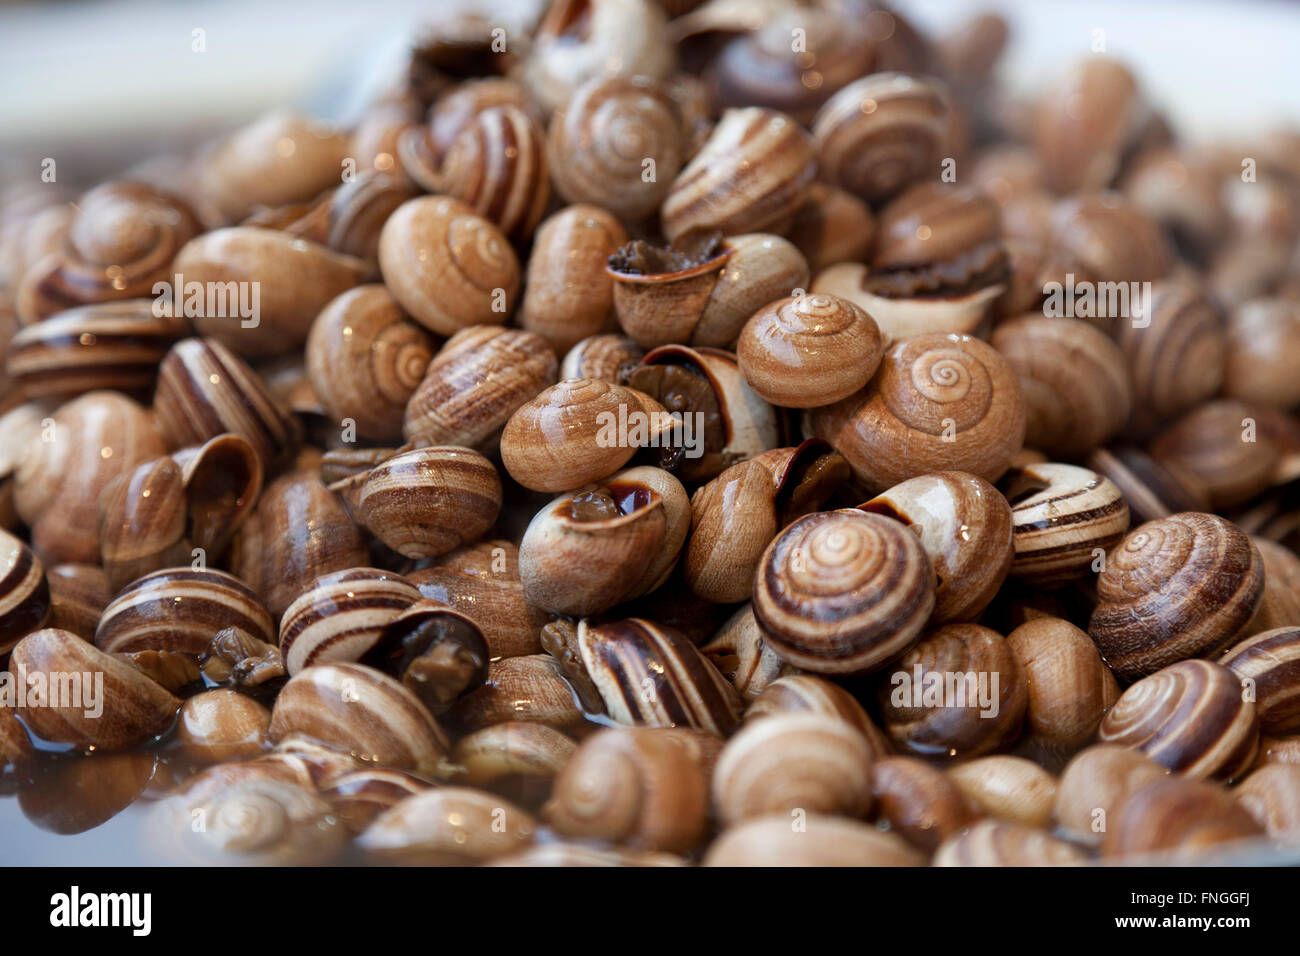 Los caracoles cocidos en el mercado de Jamaa el Fna, Marrakech, Marruecos Foto de stock